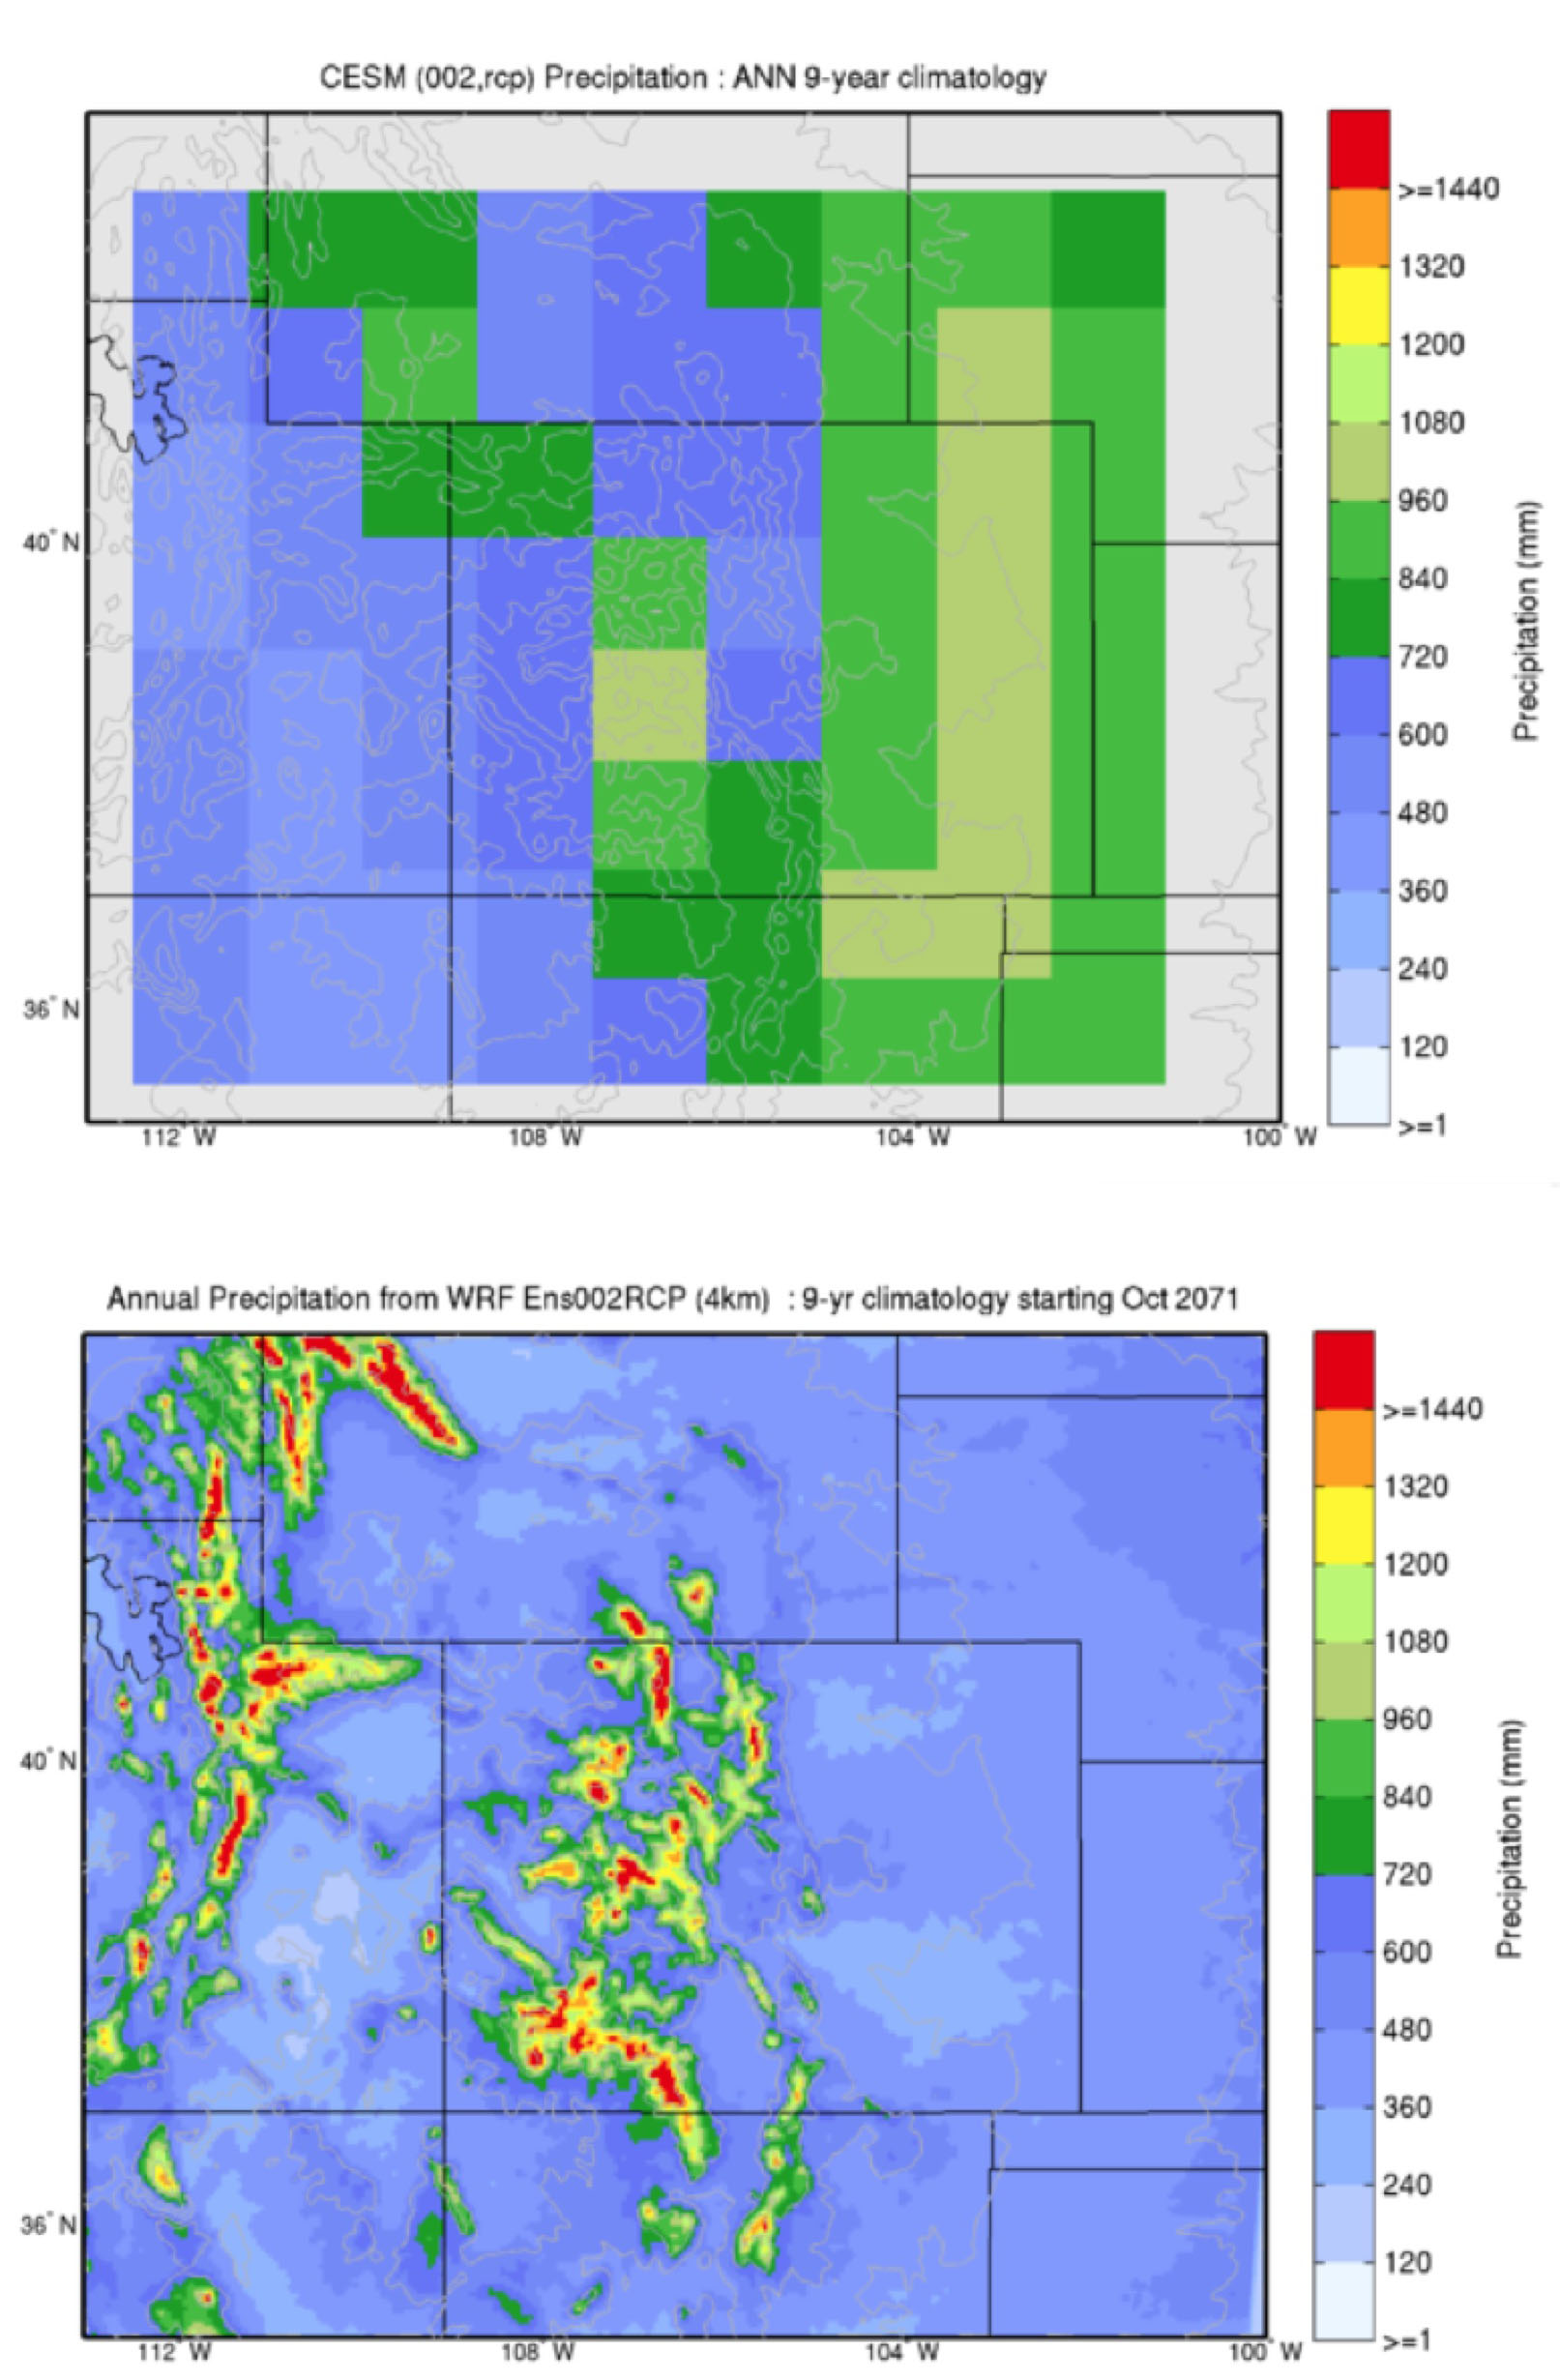 A comparison of precipitation in CESM vs. WRF